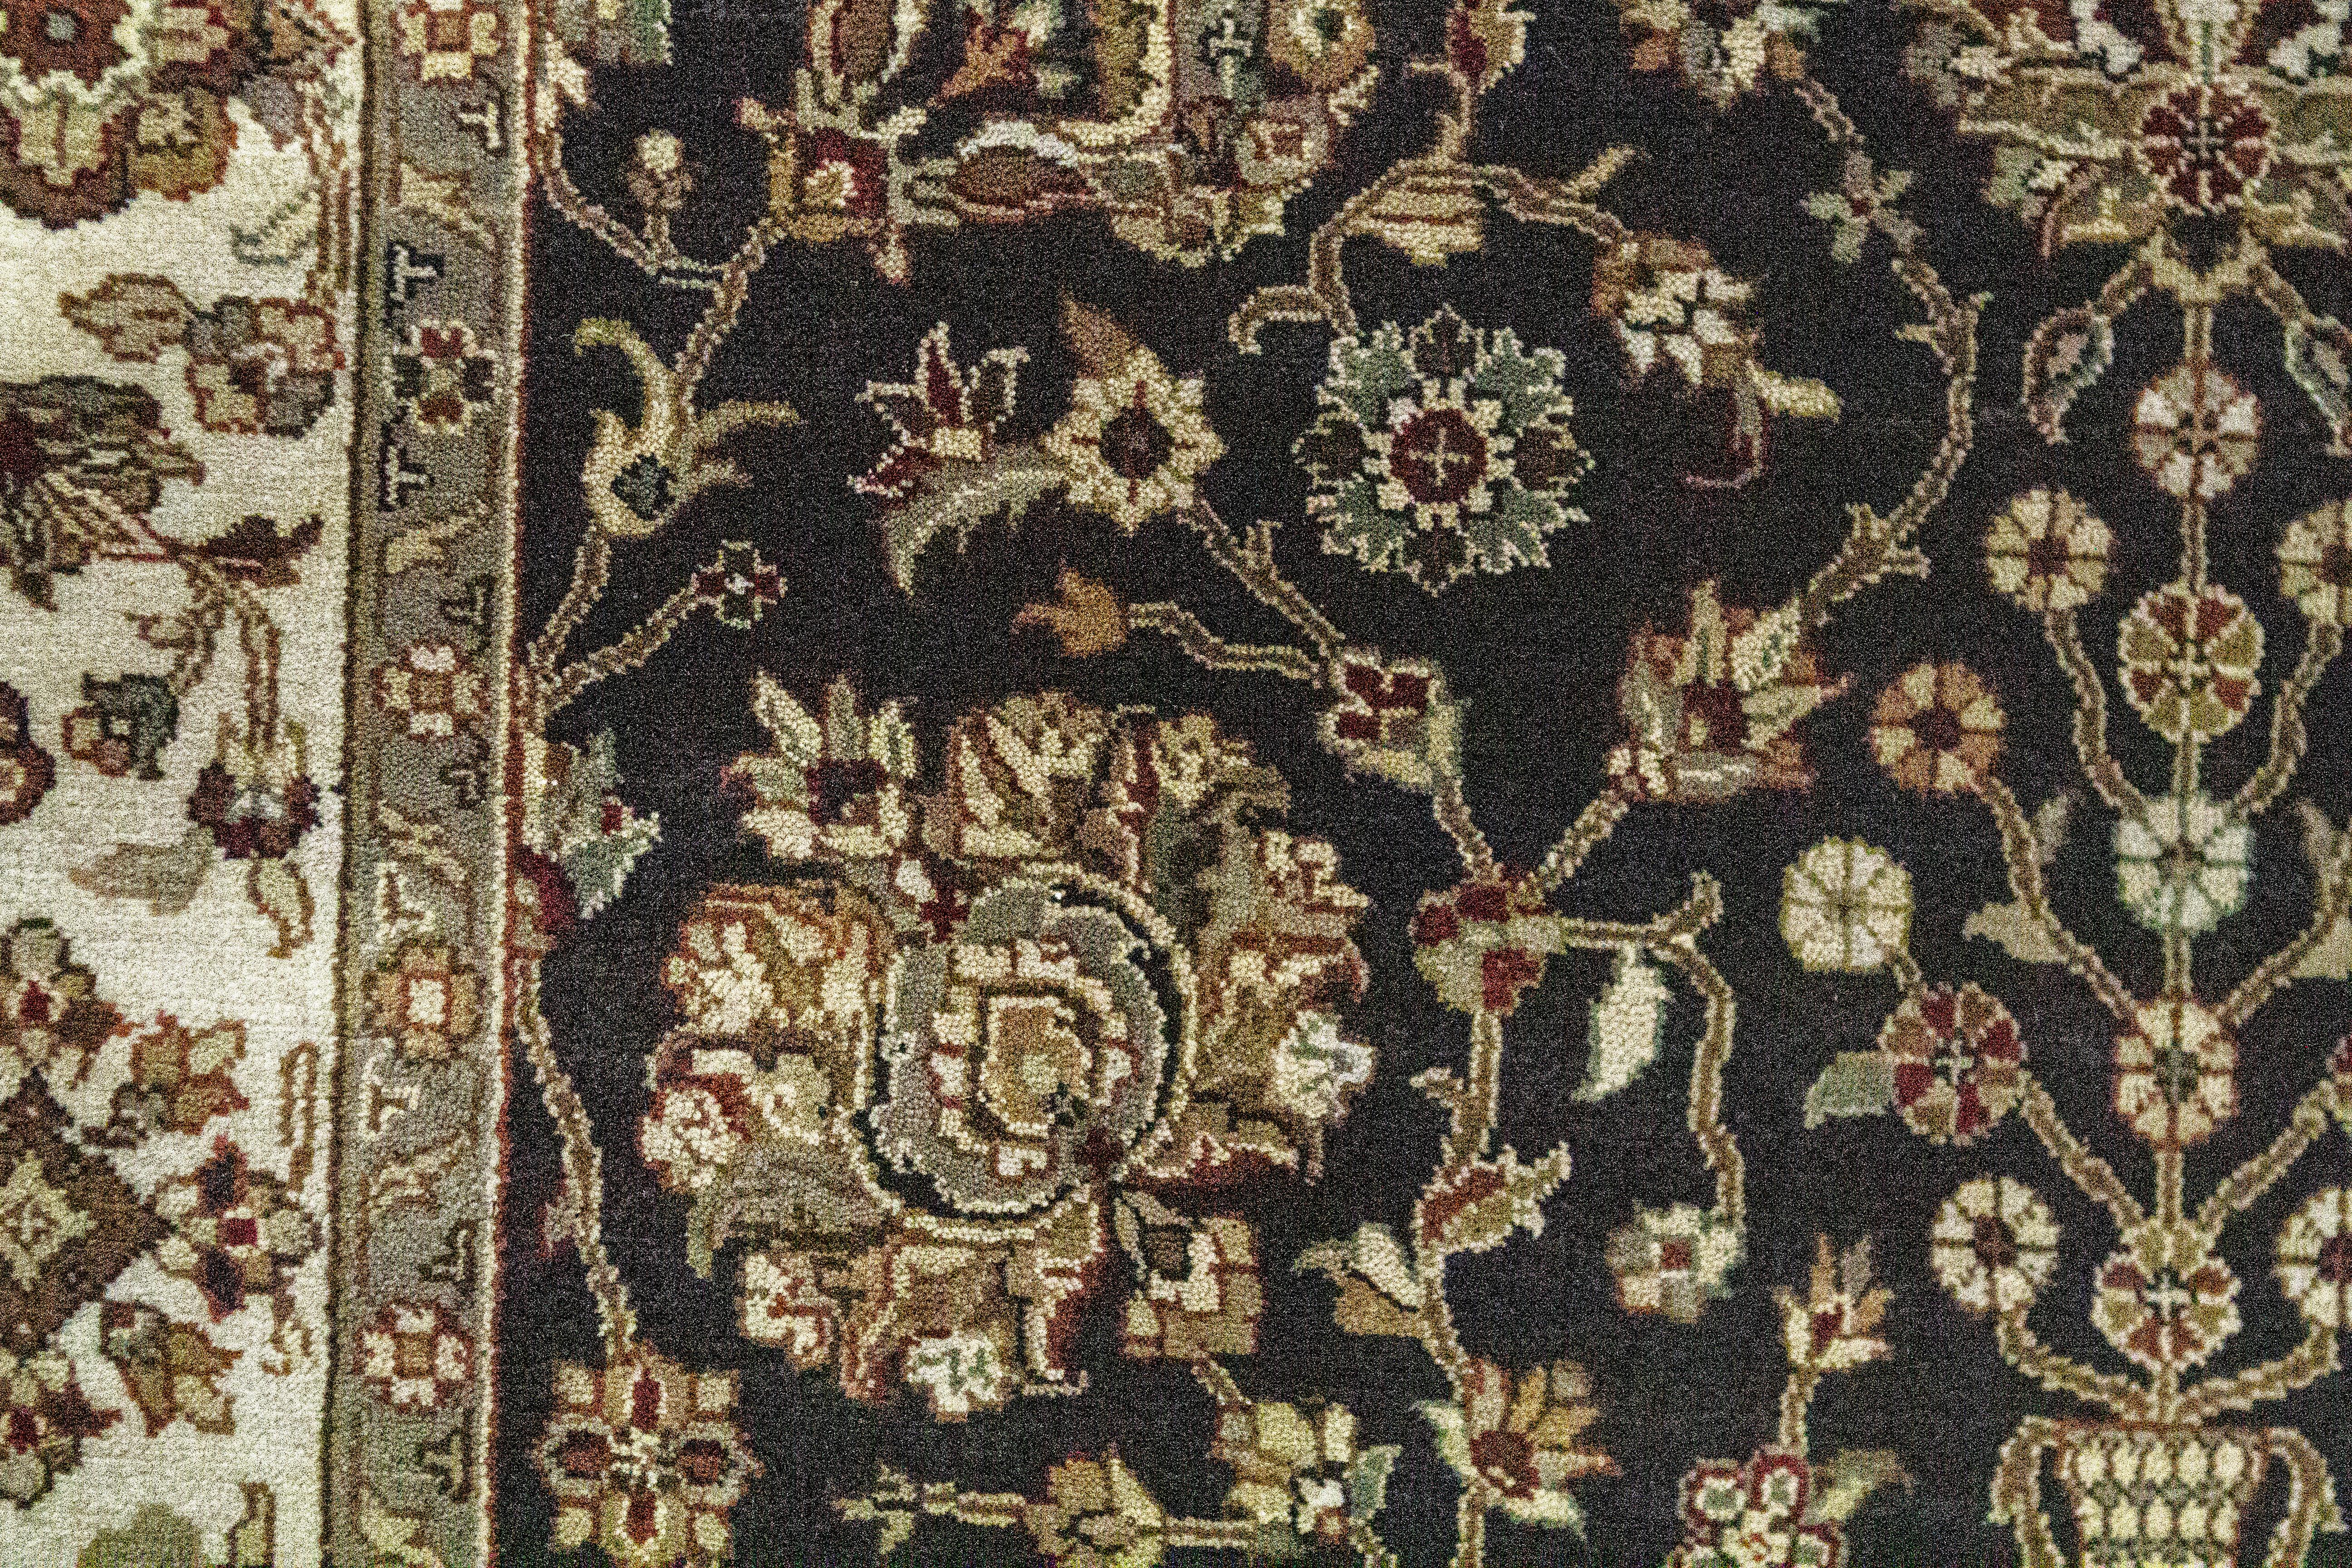 Forts d'une longue histoire, les tapis et moquettes anciens tissés en Inde sont parmi les plus fascinants de tous les tapis d'Orient. L'inspiration de cette collection provient d'authentiques motifs orientaux, tissés à la main dans le style